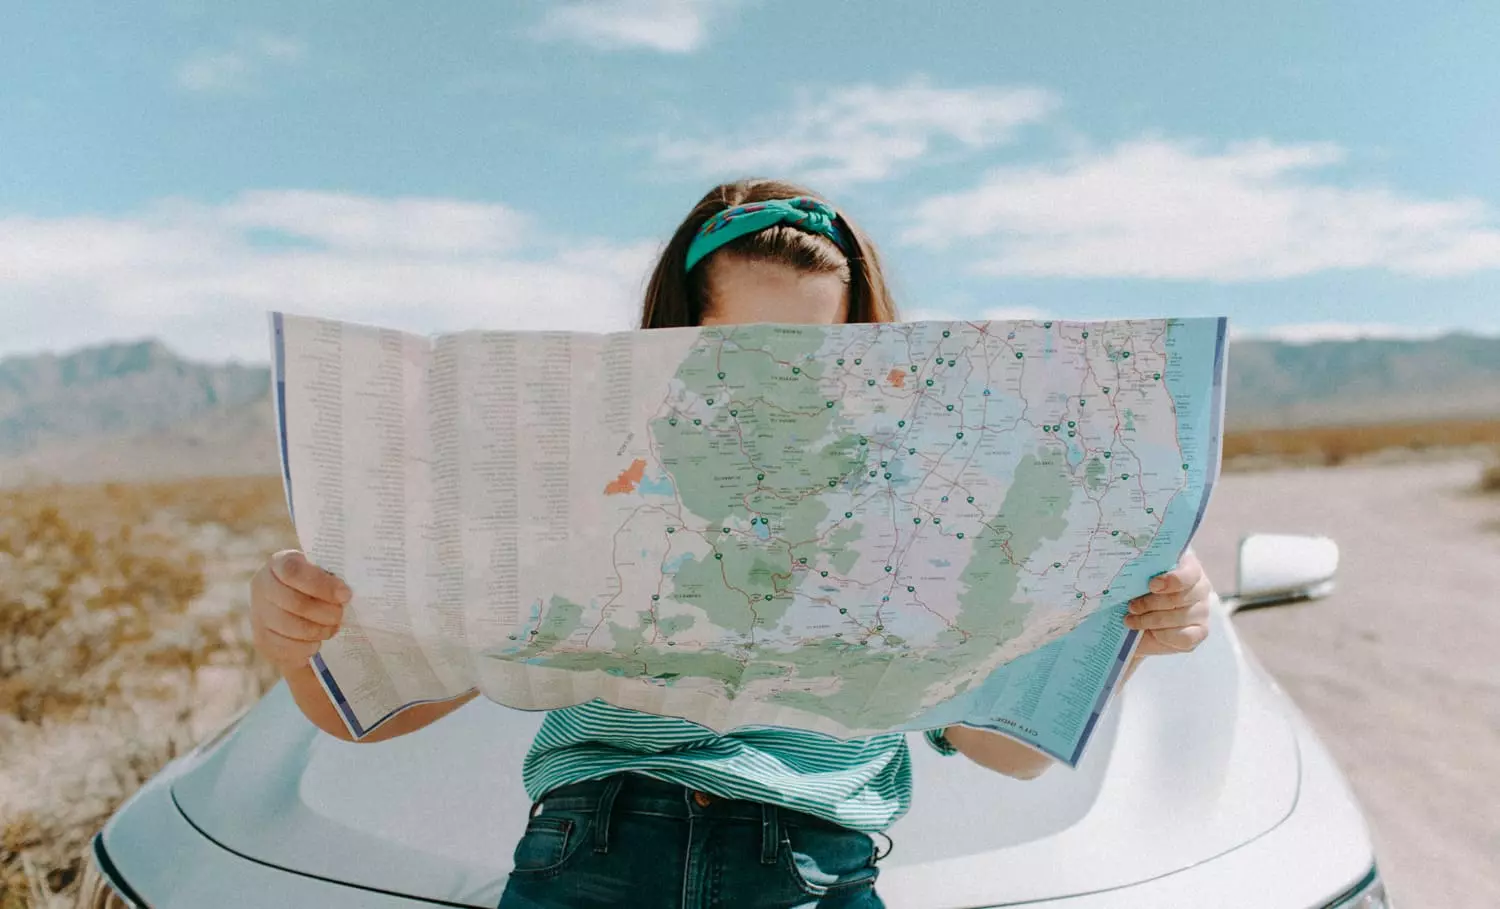 Ein Mädchen sitzt auf einer Motorhaube von einem silbernen Autor und schaut in eine Landkarte